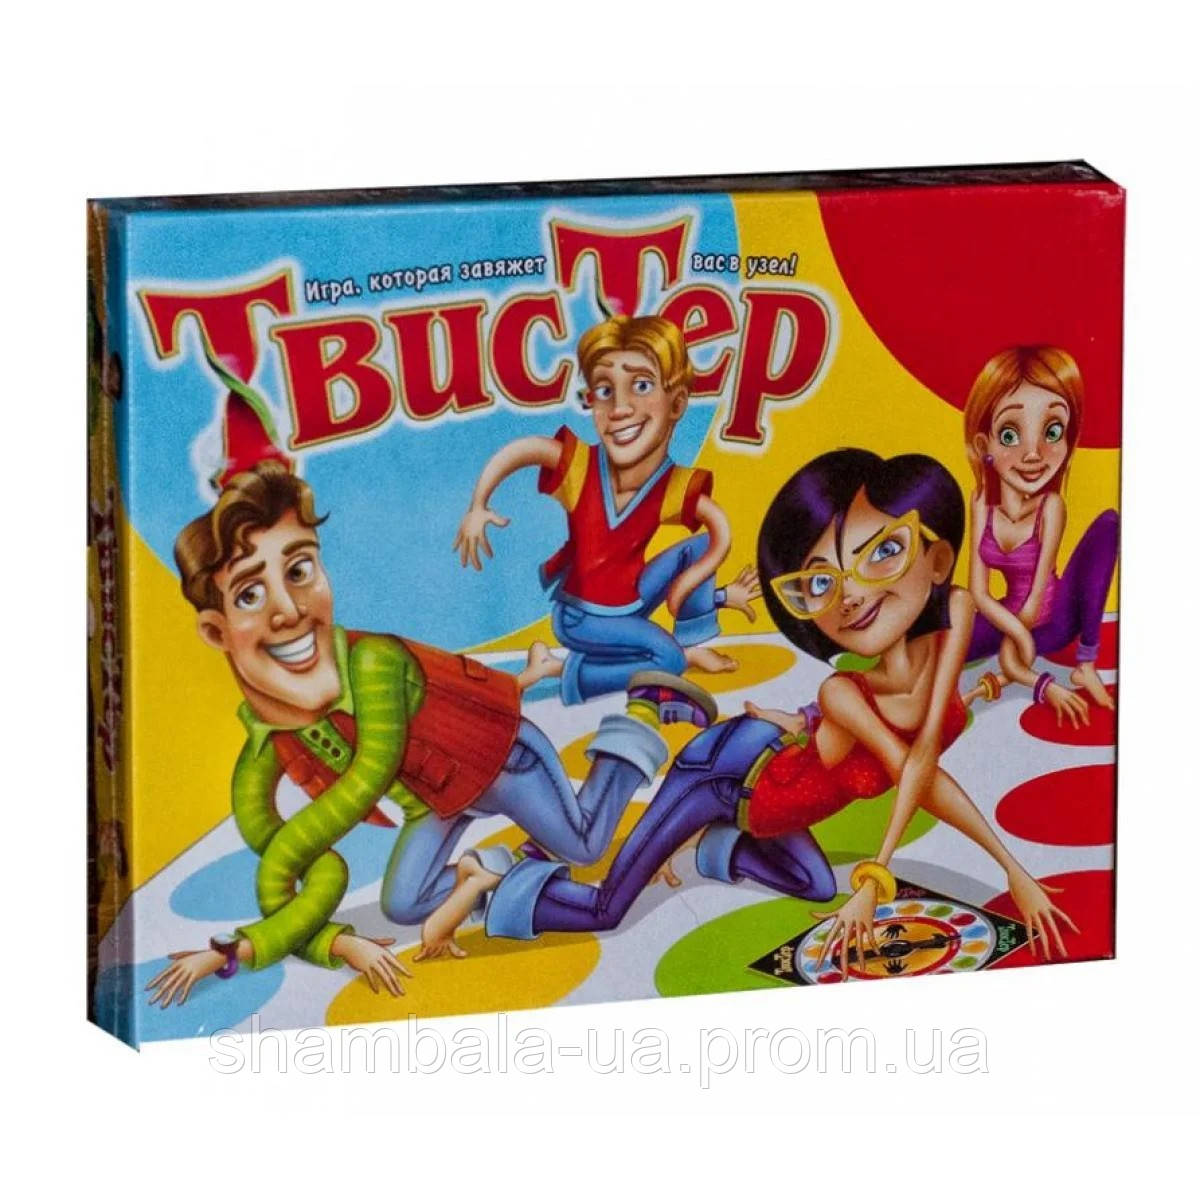 Гра велика підлогова Твістер Twister Danko Toys для дітей і всієї родини 1450х1100 см (109275)